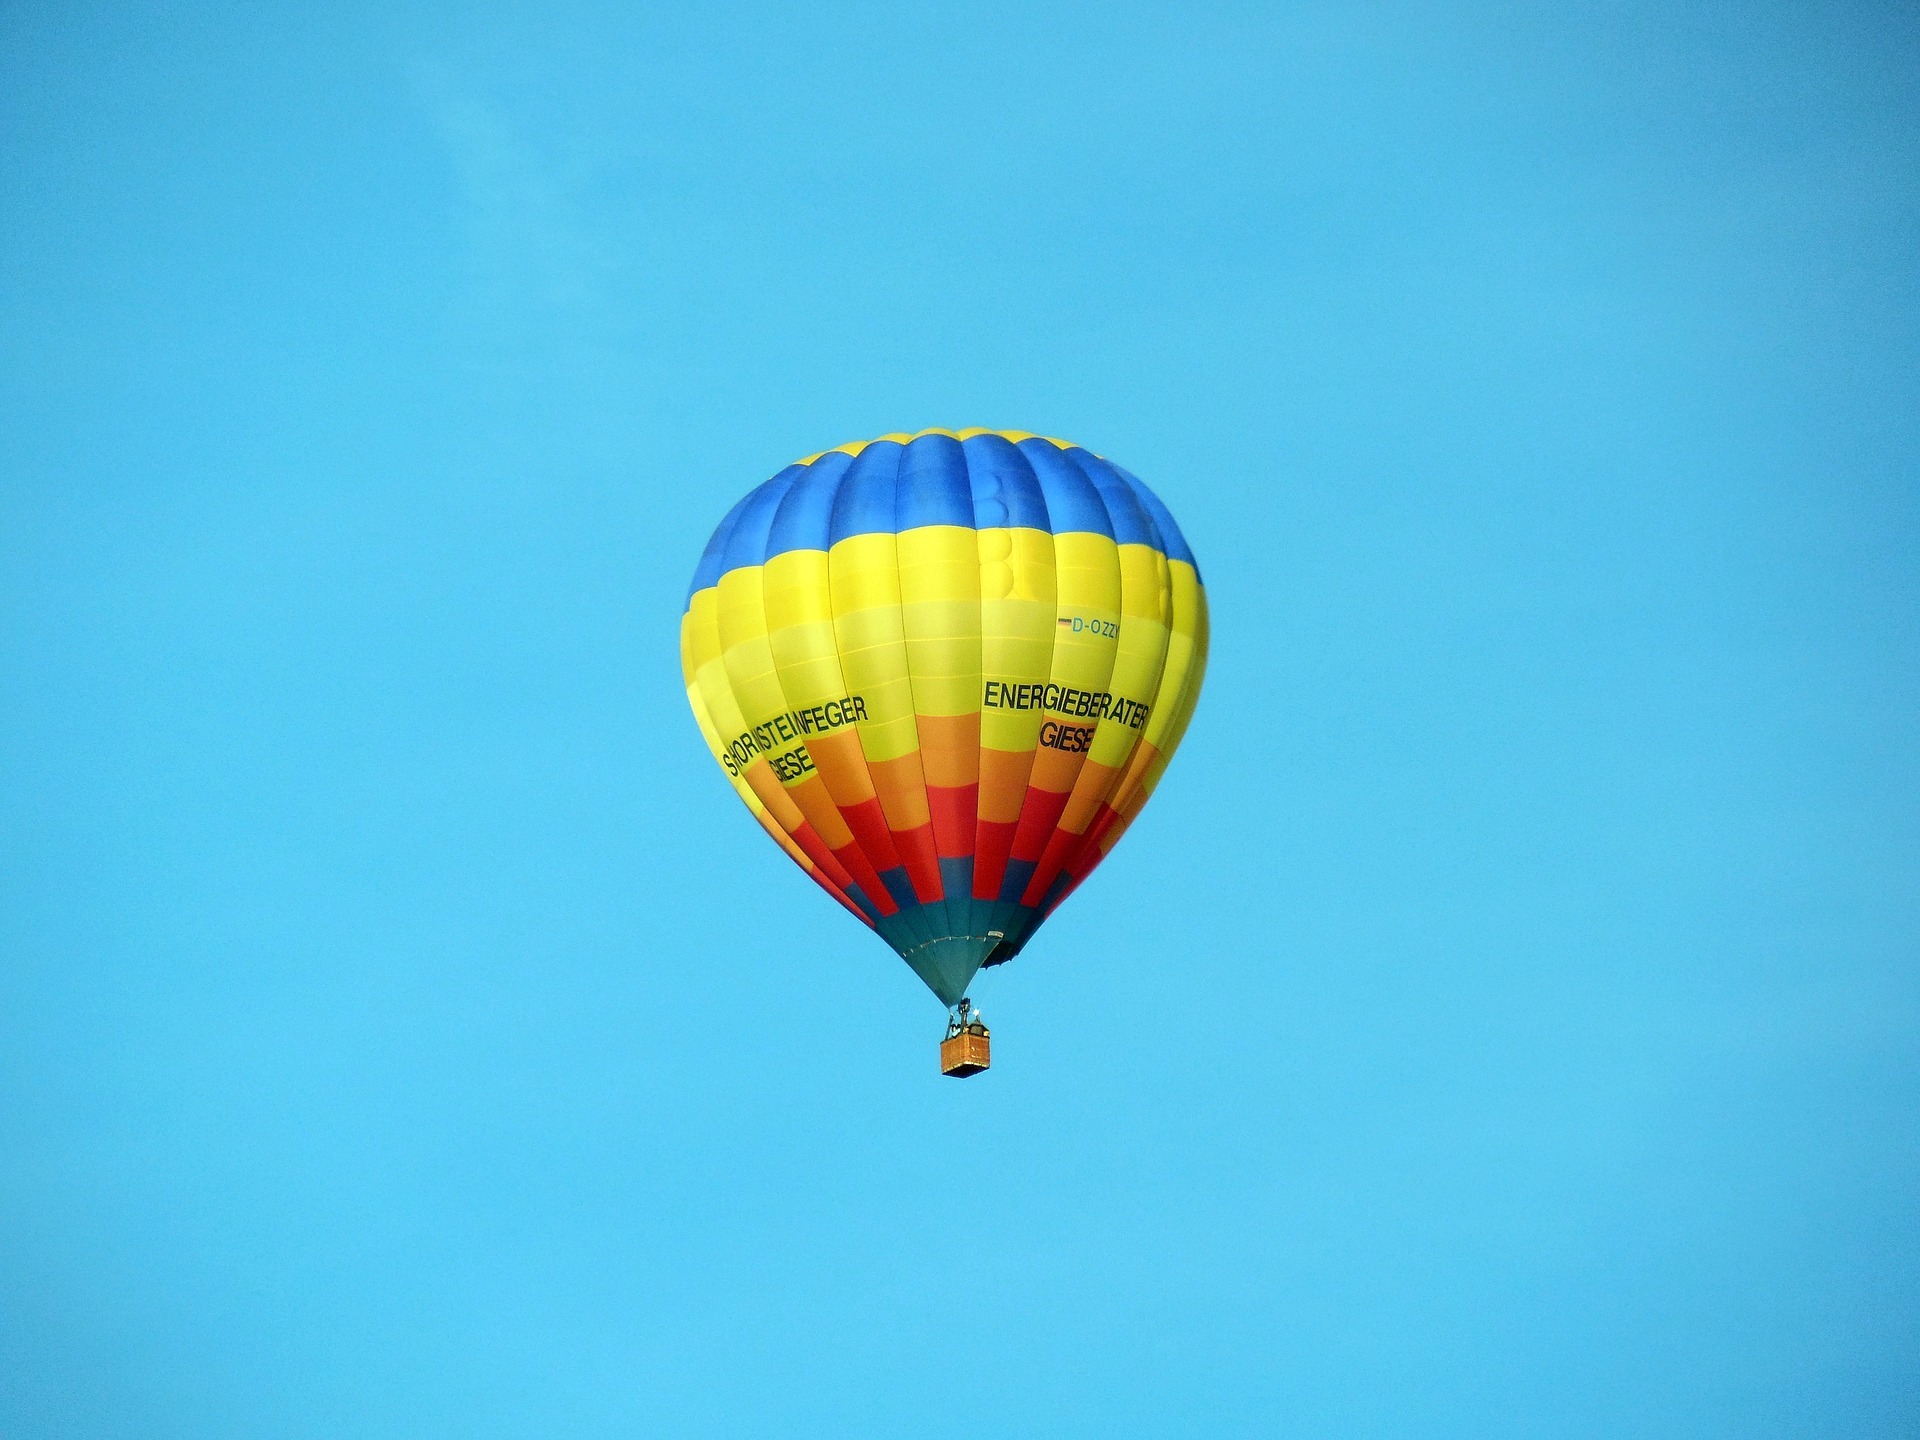 Ballonfahrt Thüringen, Heißluftballon am Himmel